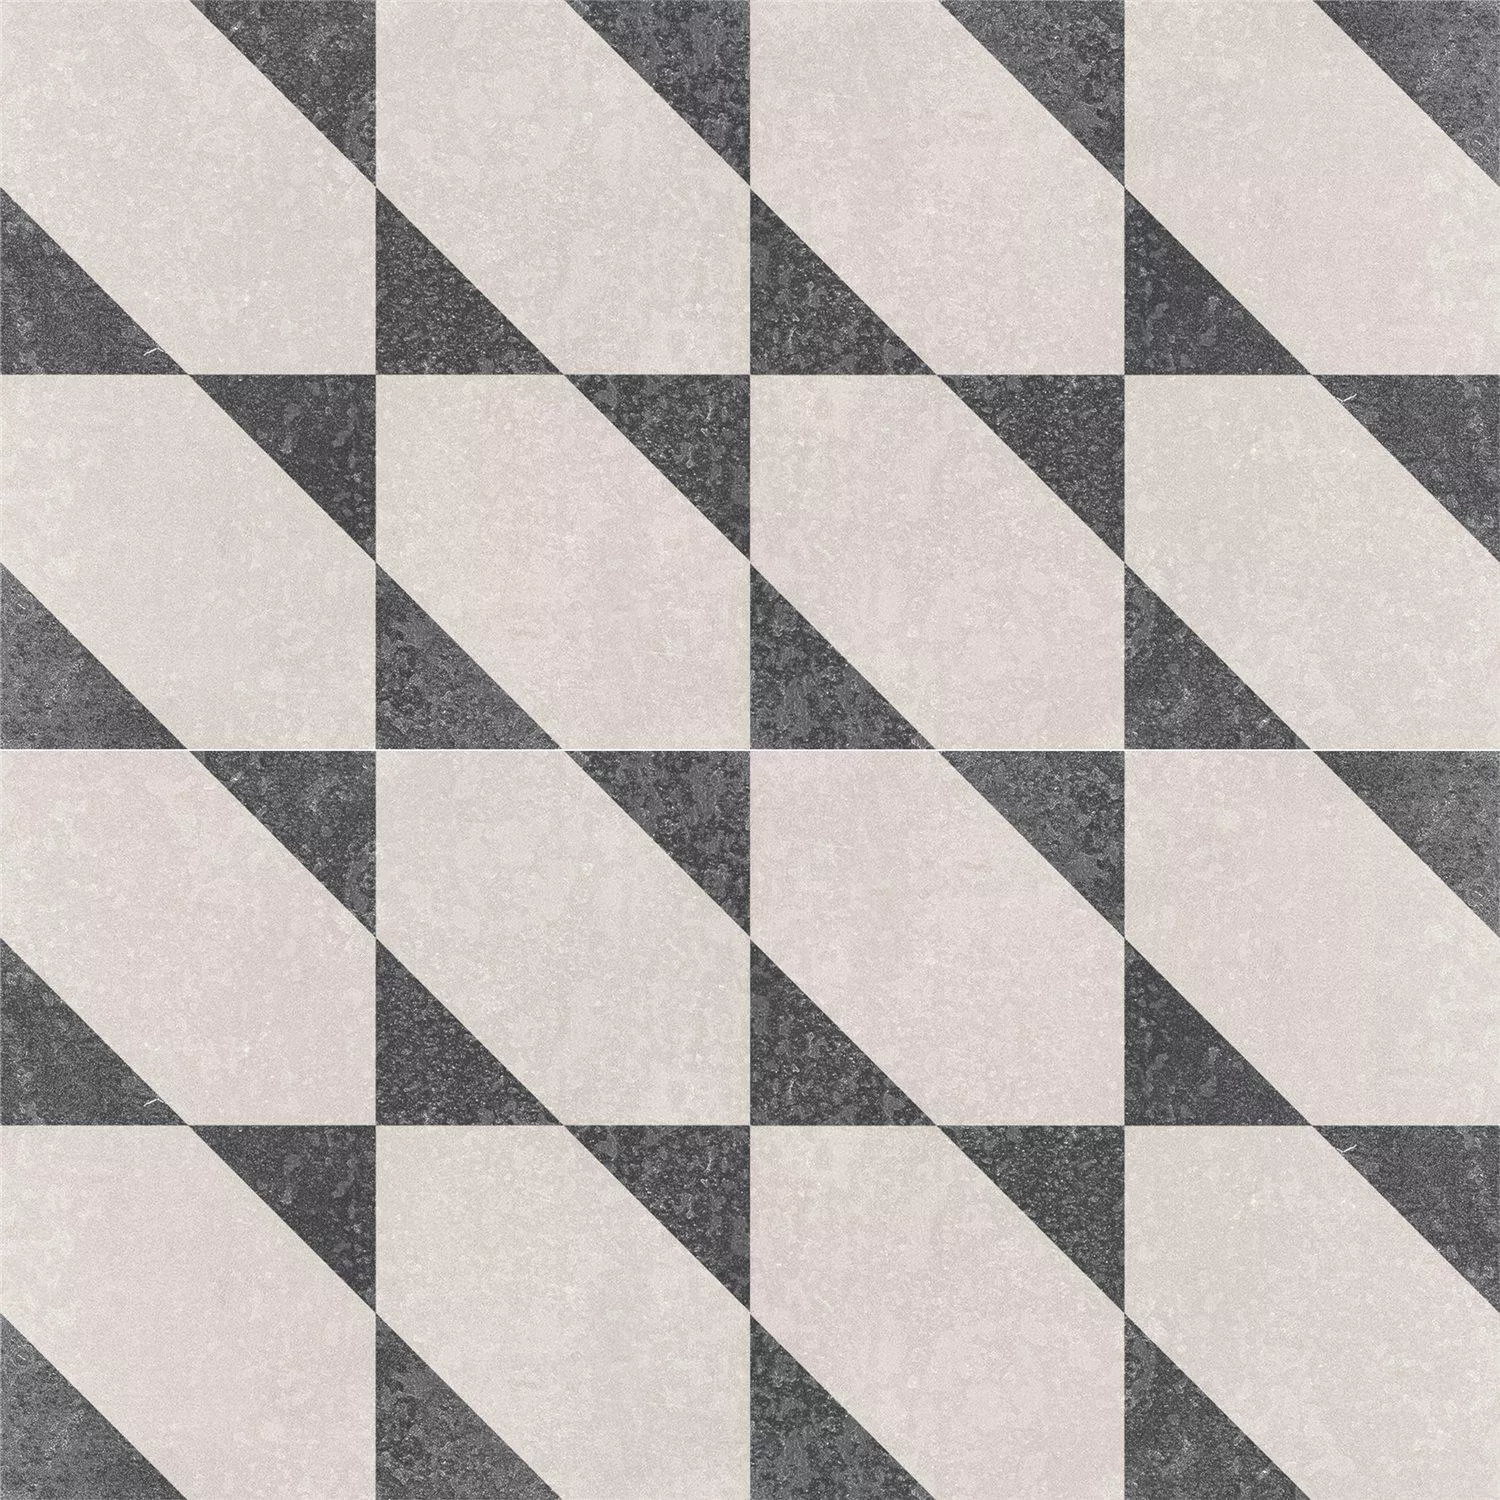 Sample Cement Tiles Retro Optic Gris Floor Tiles Alonso 18,6x18,6cm